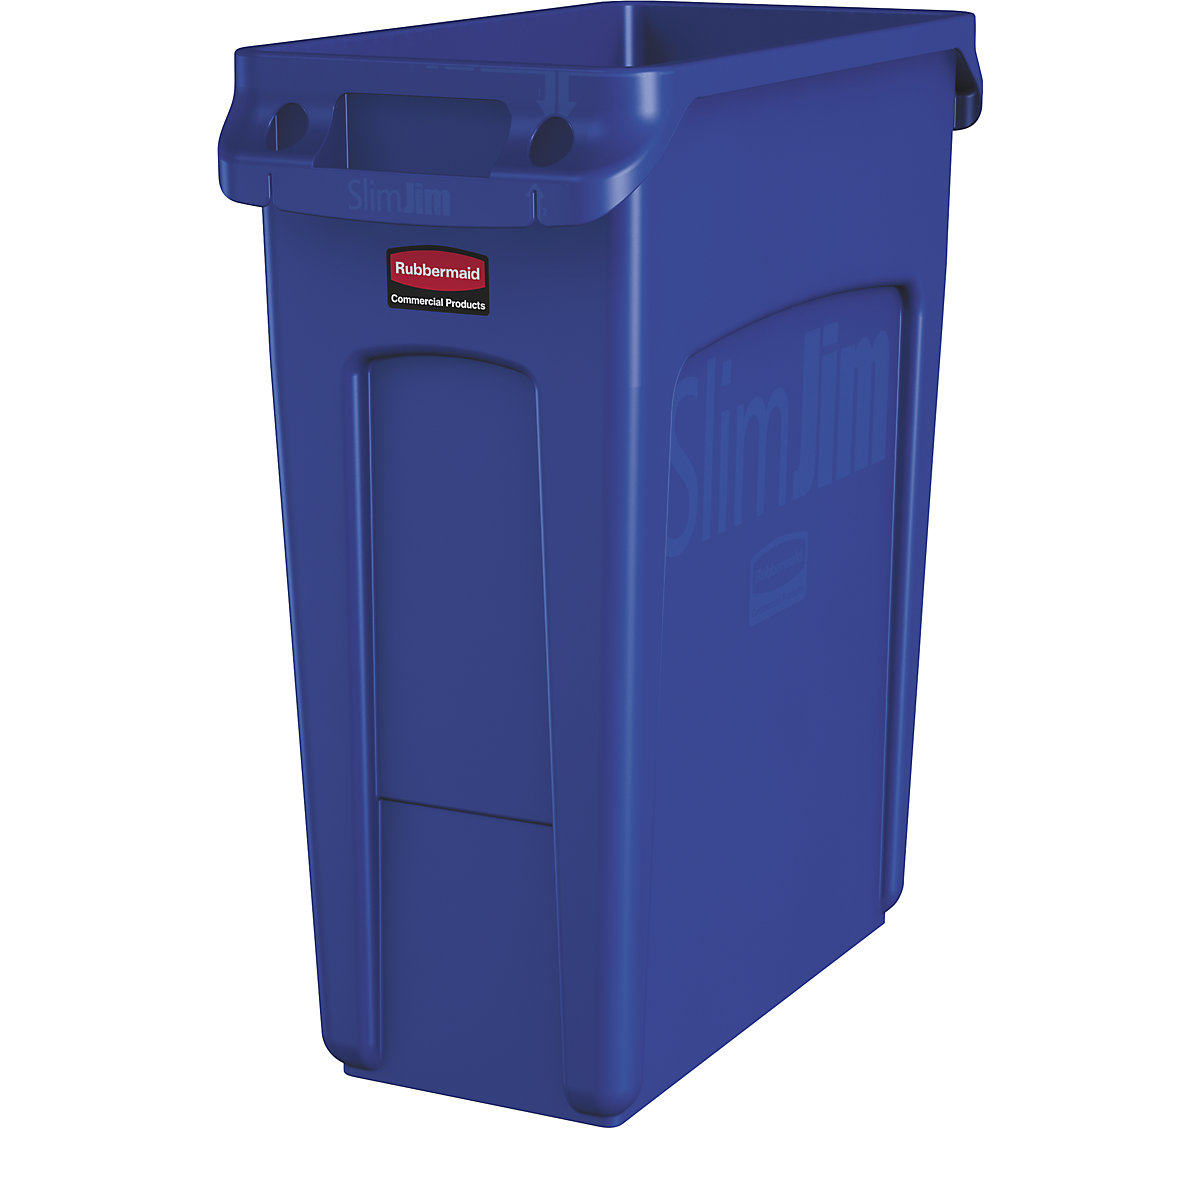 Verzamelaar voor kringloopmateriaal/afvalbak SLIM JIM® – Rubbermaid, volume 60 l, met ventilatiekanalen, blauw-9